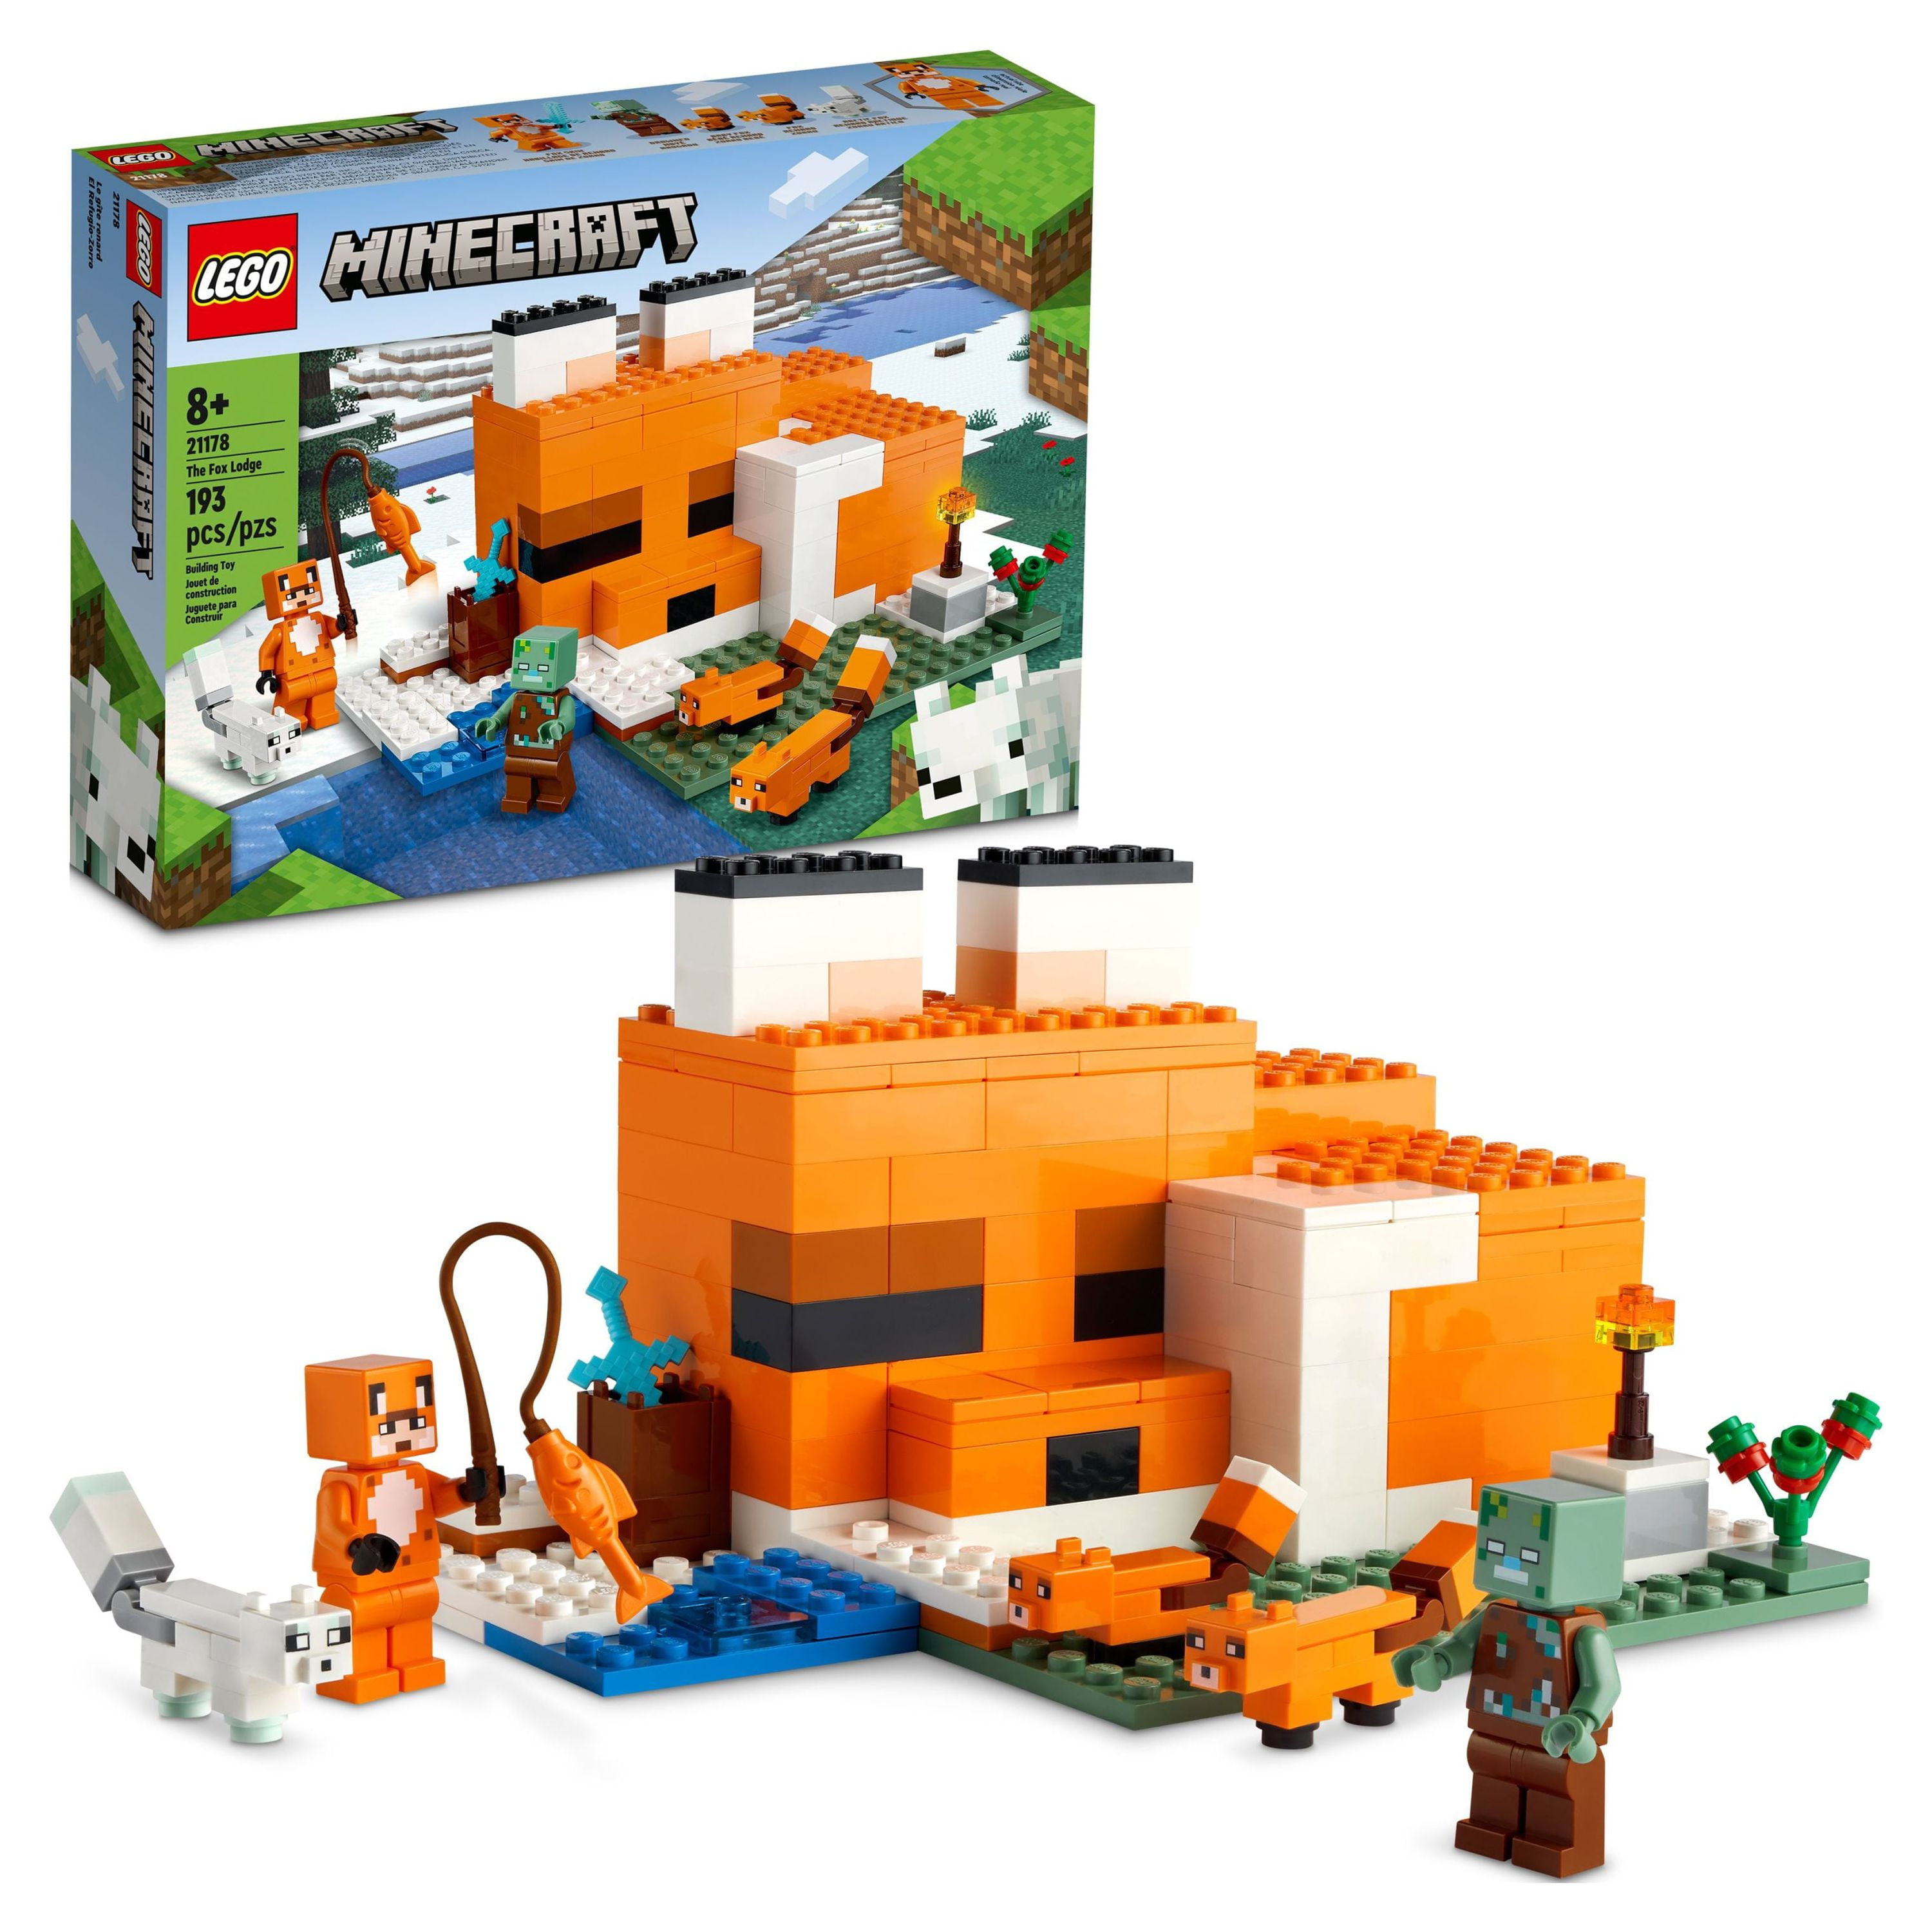 Promo 21179 La Maison Champignon Lego Minecraft, 21178 Le Refuge Renard  Lego Minecraft, 21181 Le Ranch Lapin Lego Minecraft chez Maxi Toys